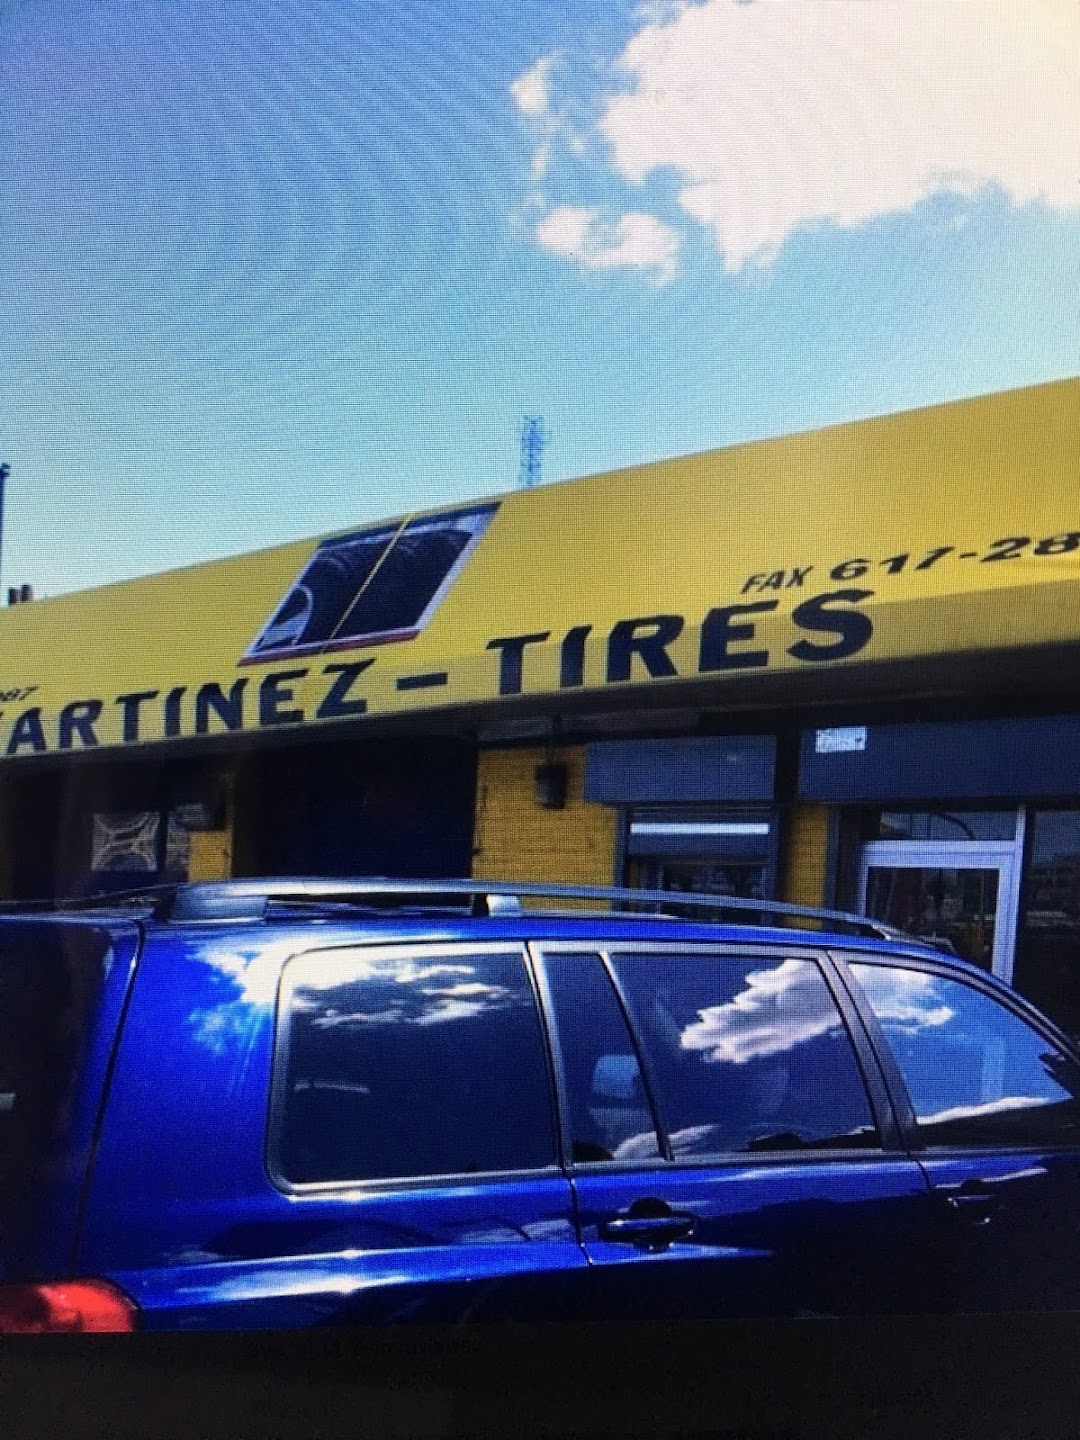 Martinez tires